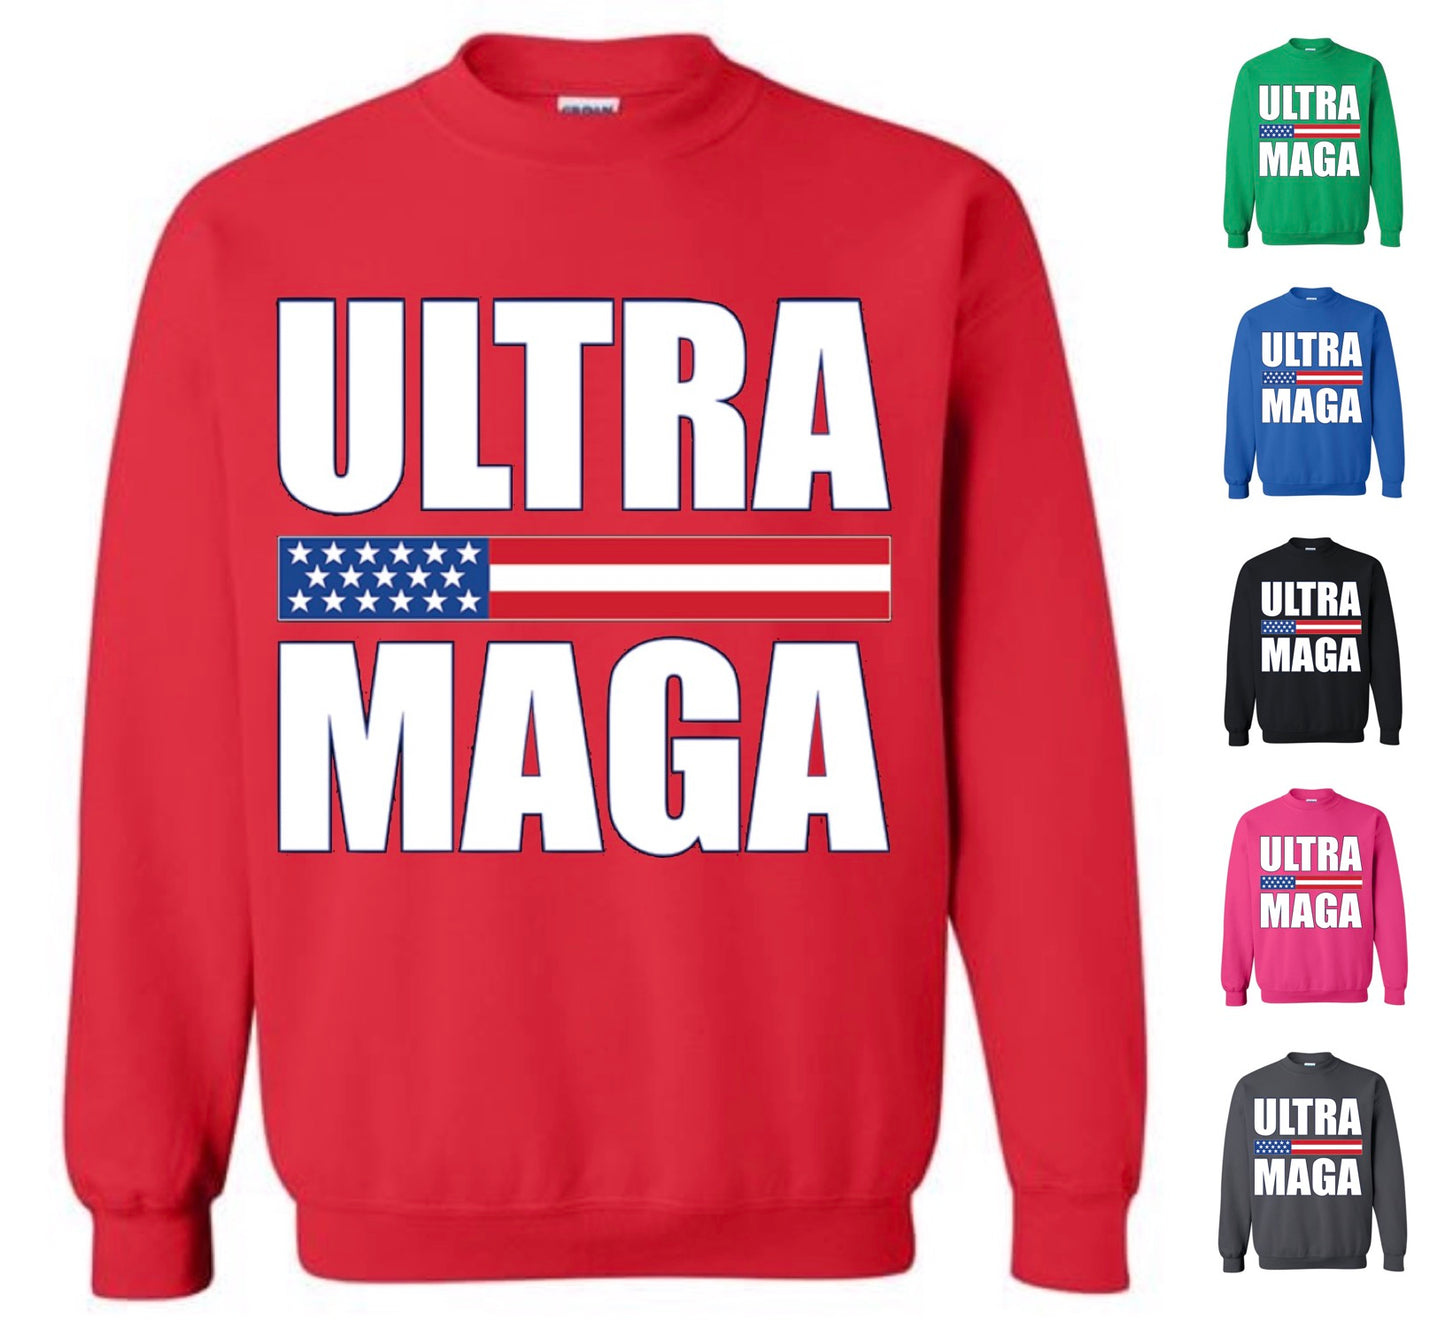 Ultra MAGA Sweatshirt